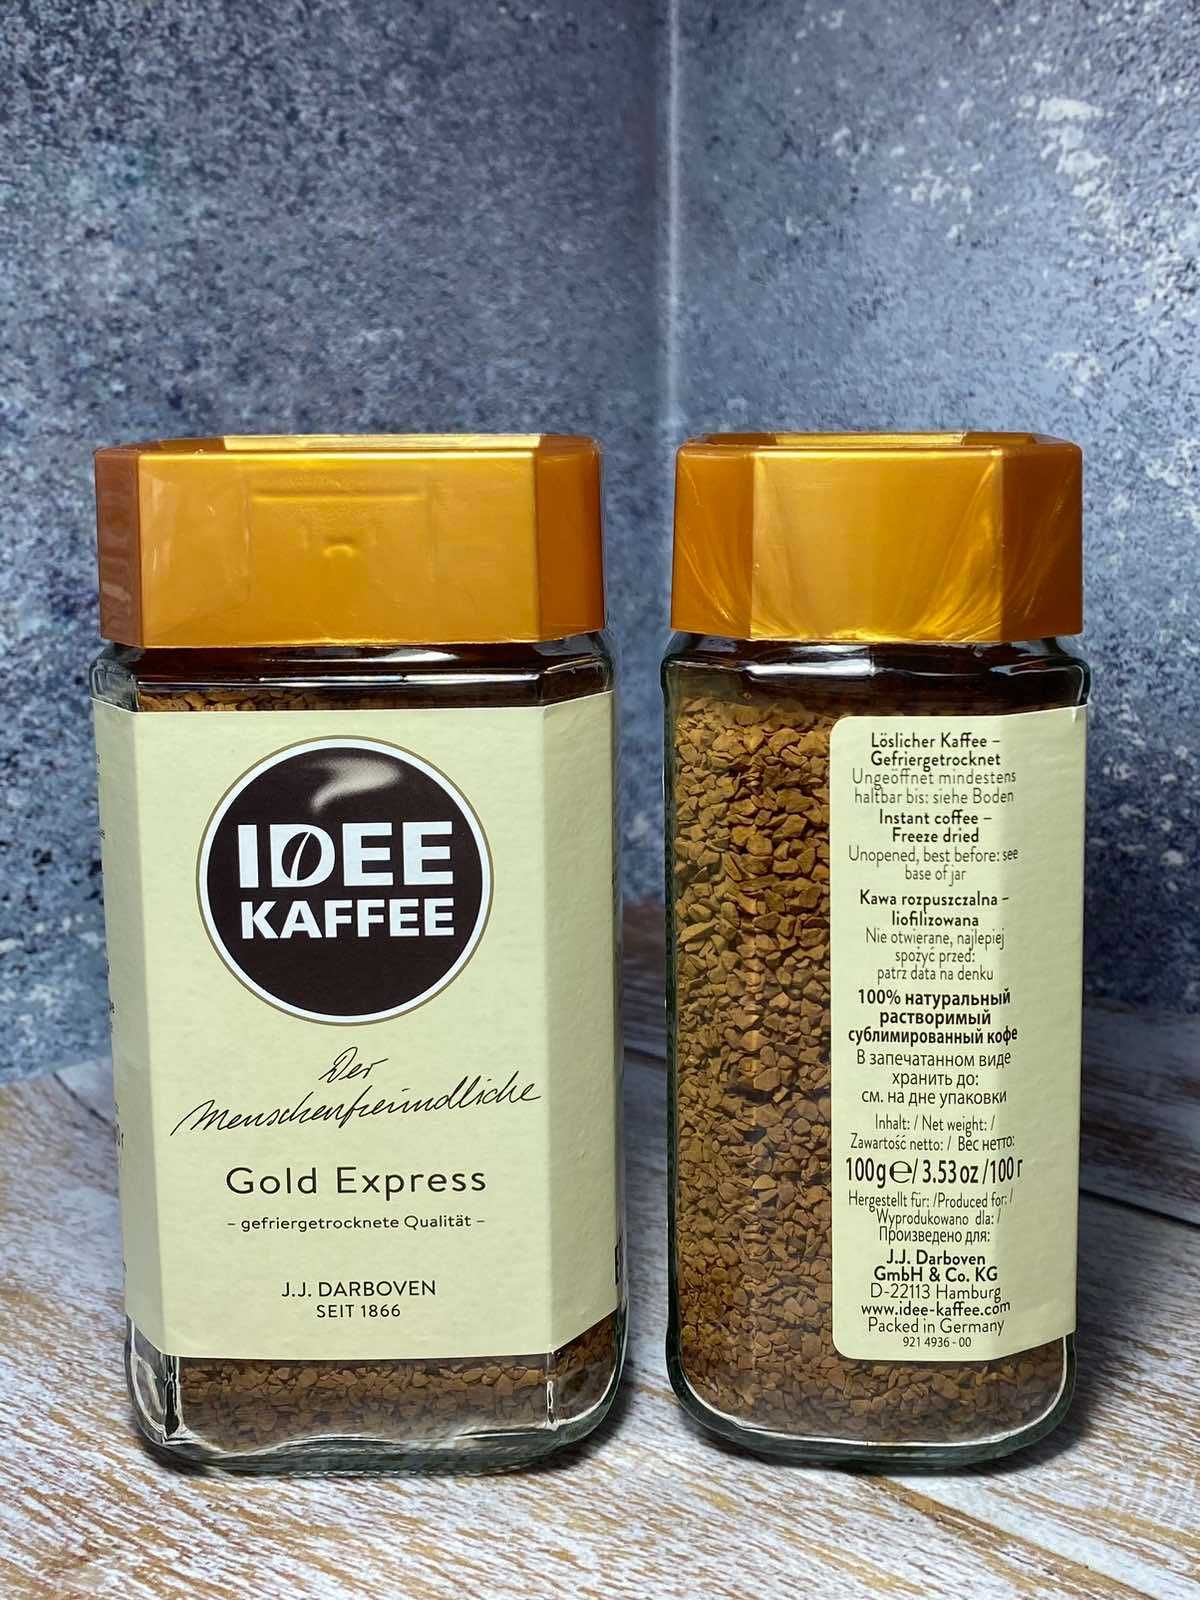 Розчинна кава Idee Kaffee 
100/200г